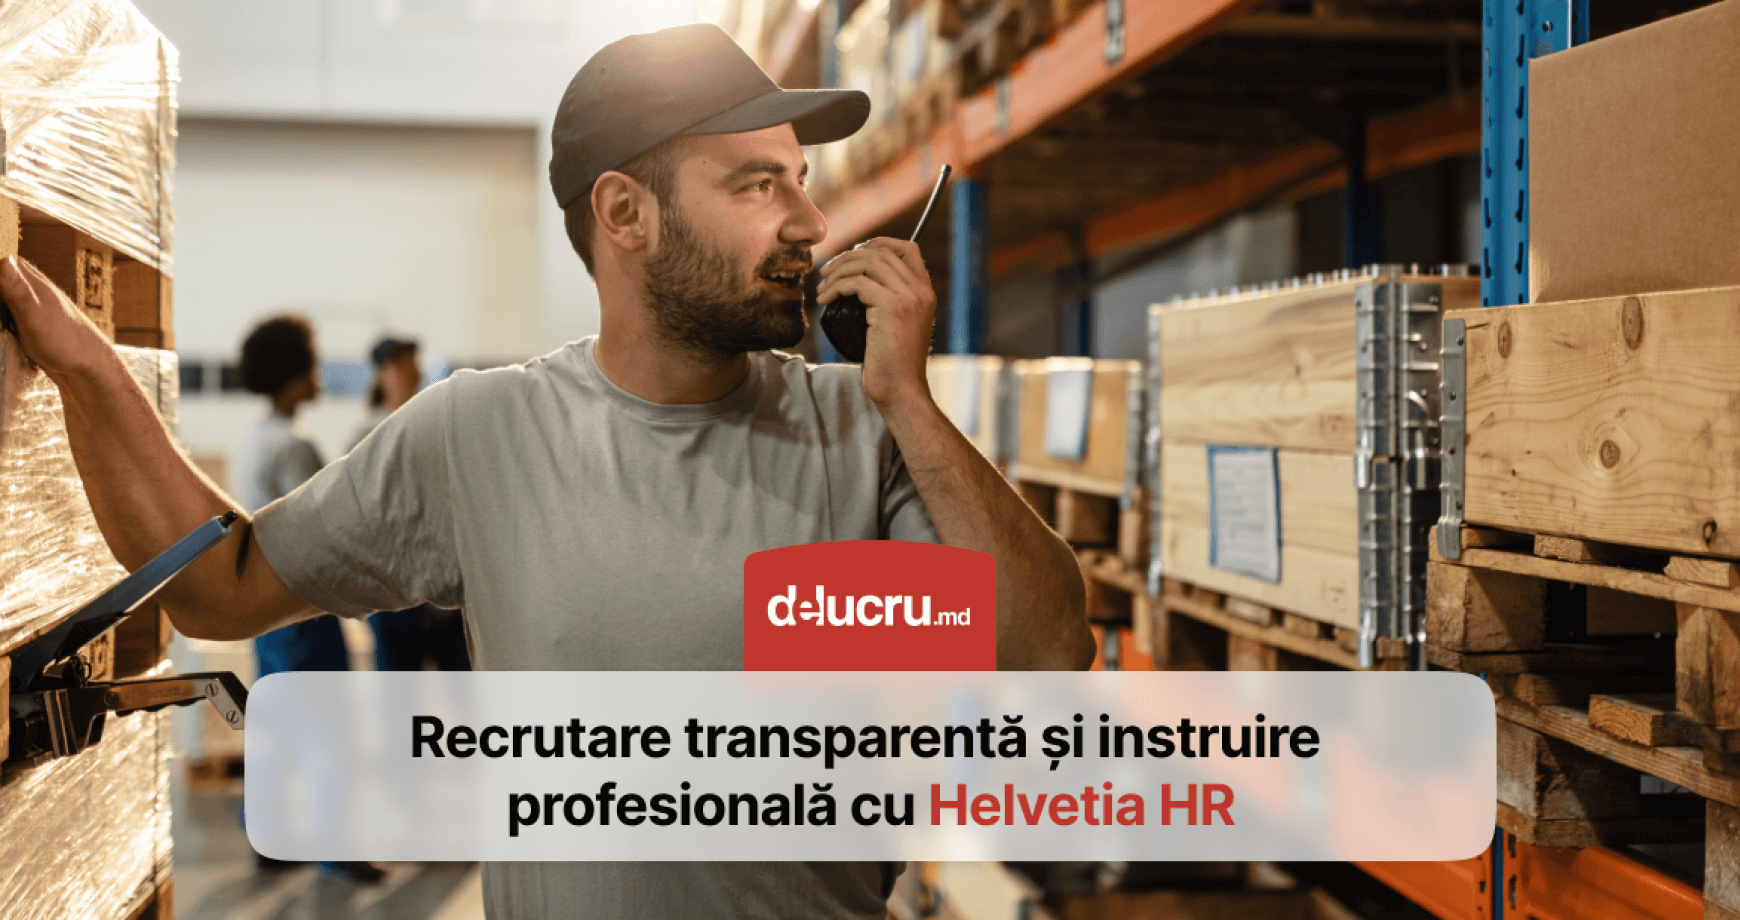 Integritatea și profesionalismul la Helvetia HR